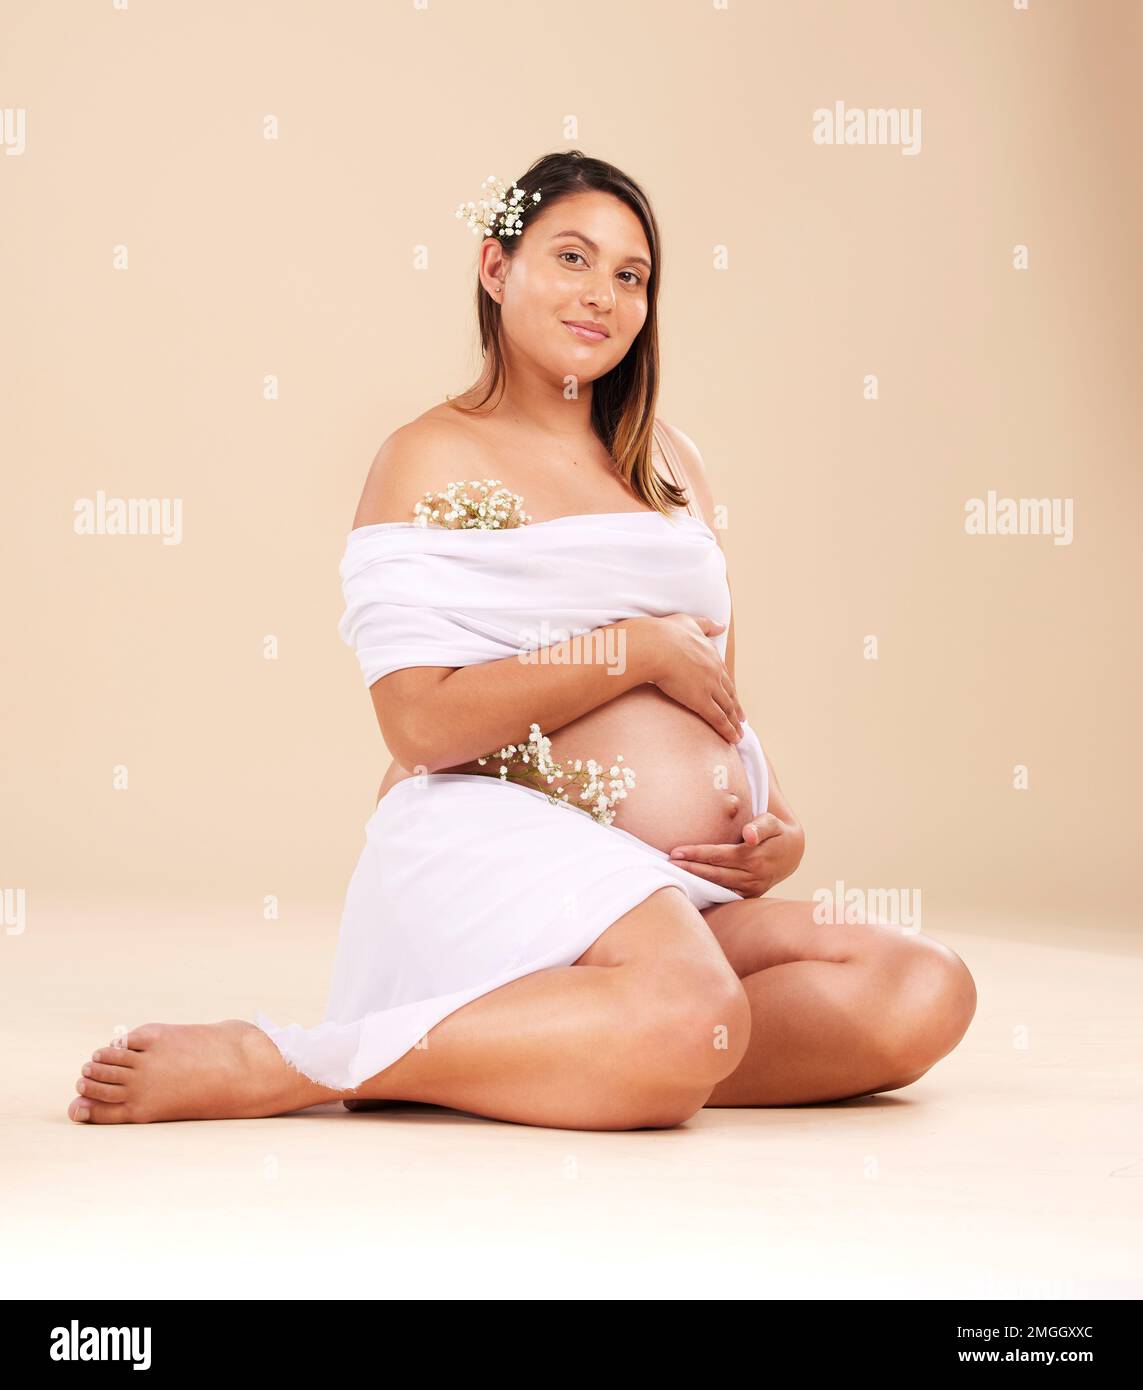 Grossesse, beauté et portrait d'une femme en studio avec du matériel de mousseline et des fleurs tenant son estomac. Maternité, santé prénatale et grossesse Banque D'Images